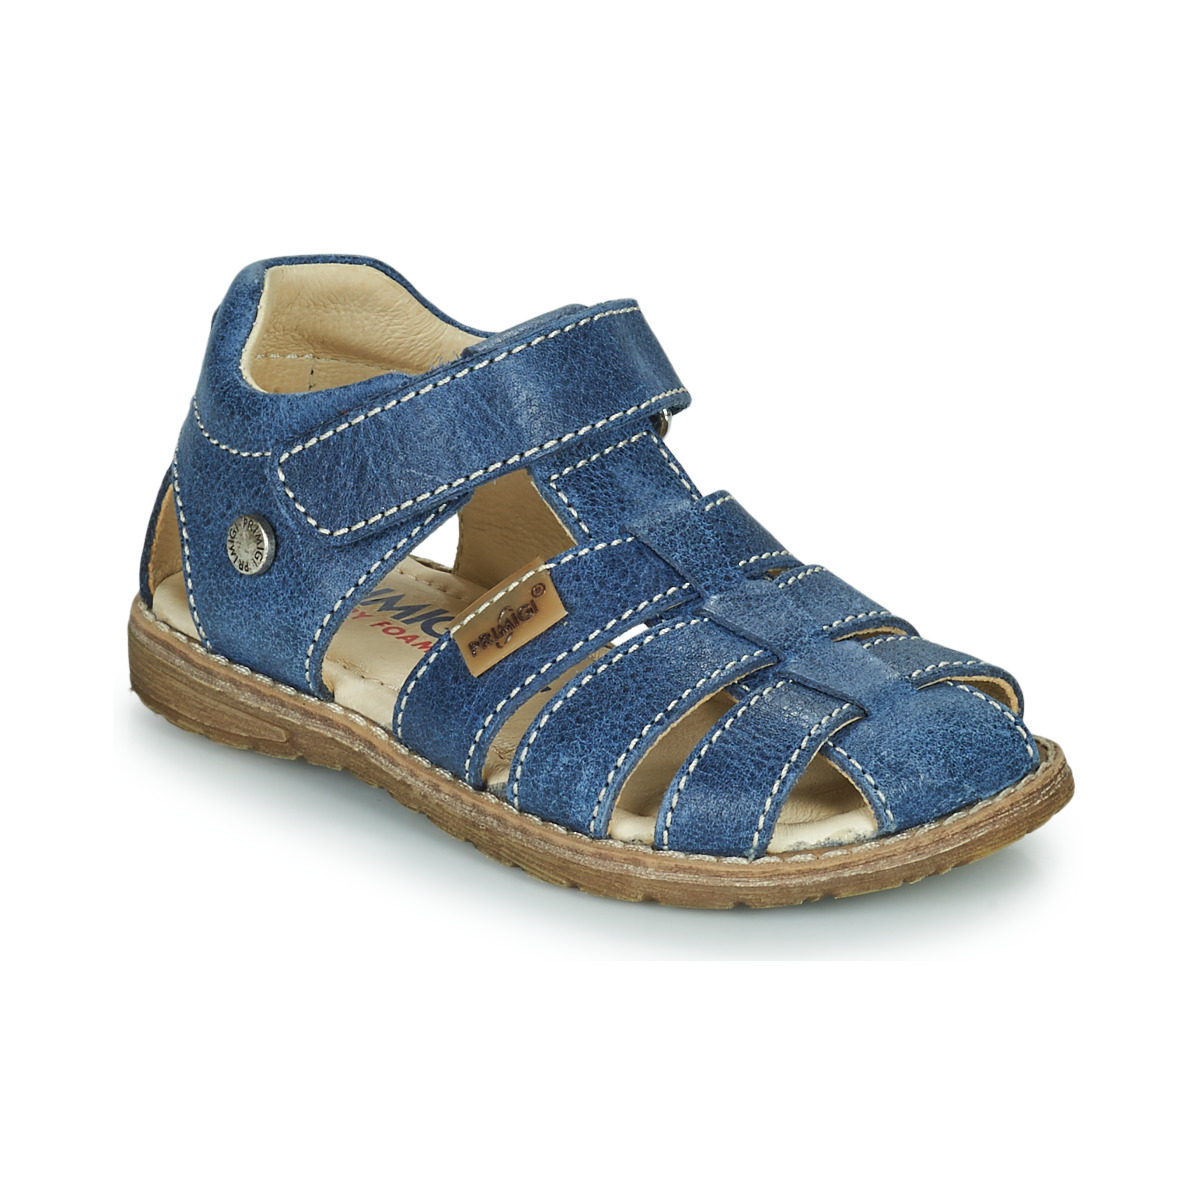 Zapatos Niño Sandalias Primigi 1914511-C Azul